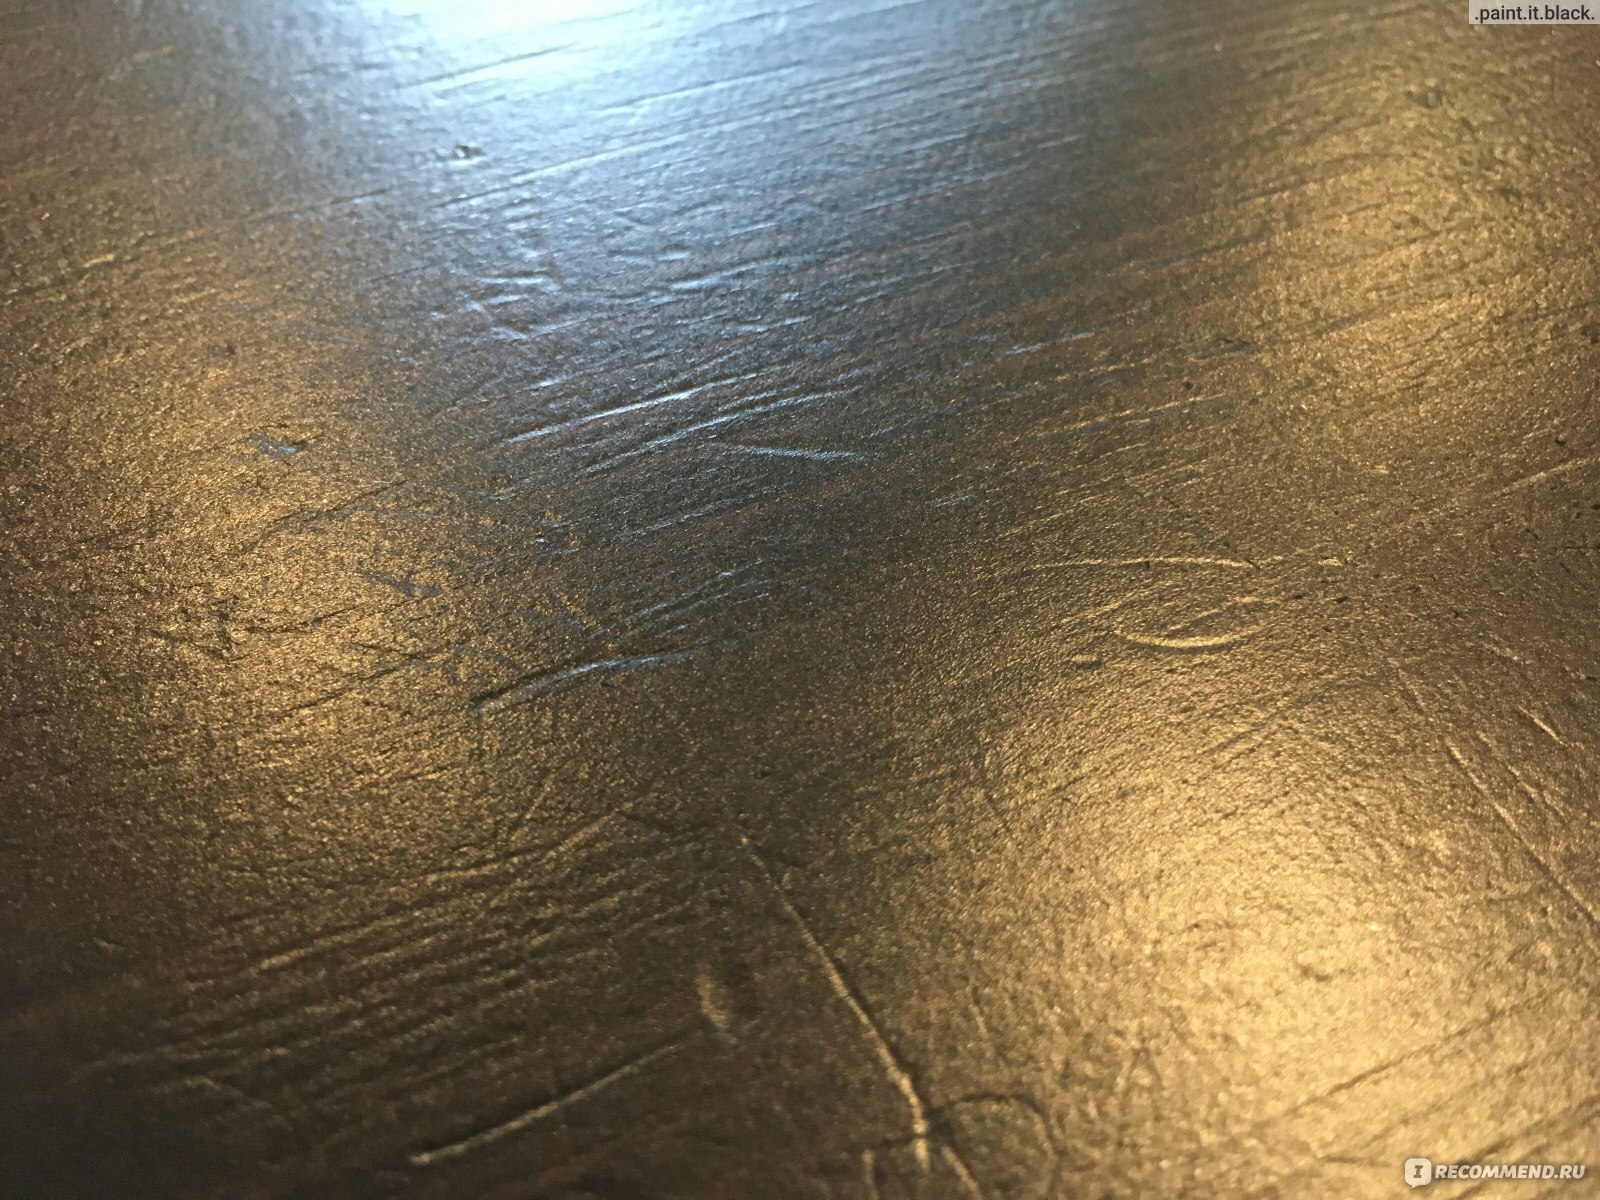 Упала вилка со стола